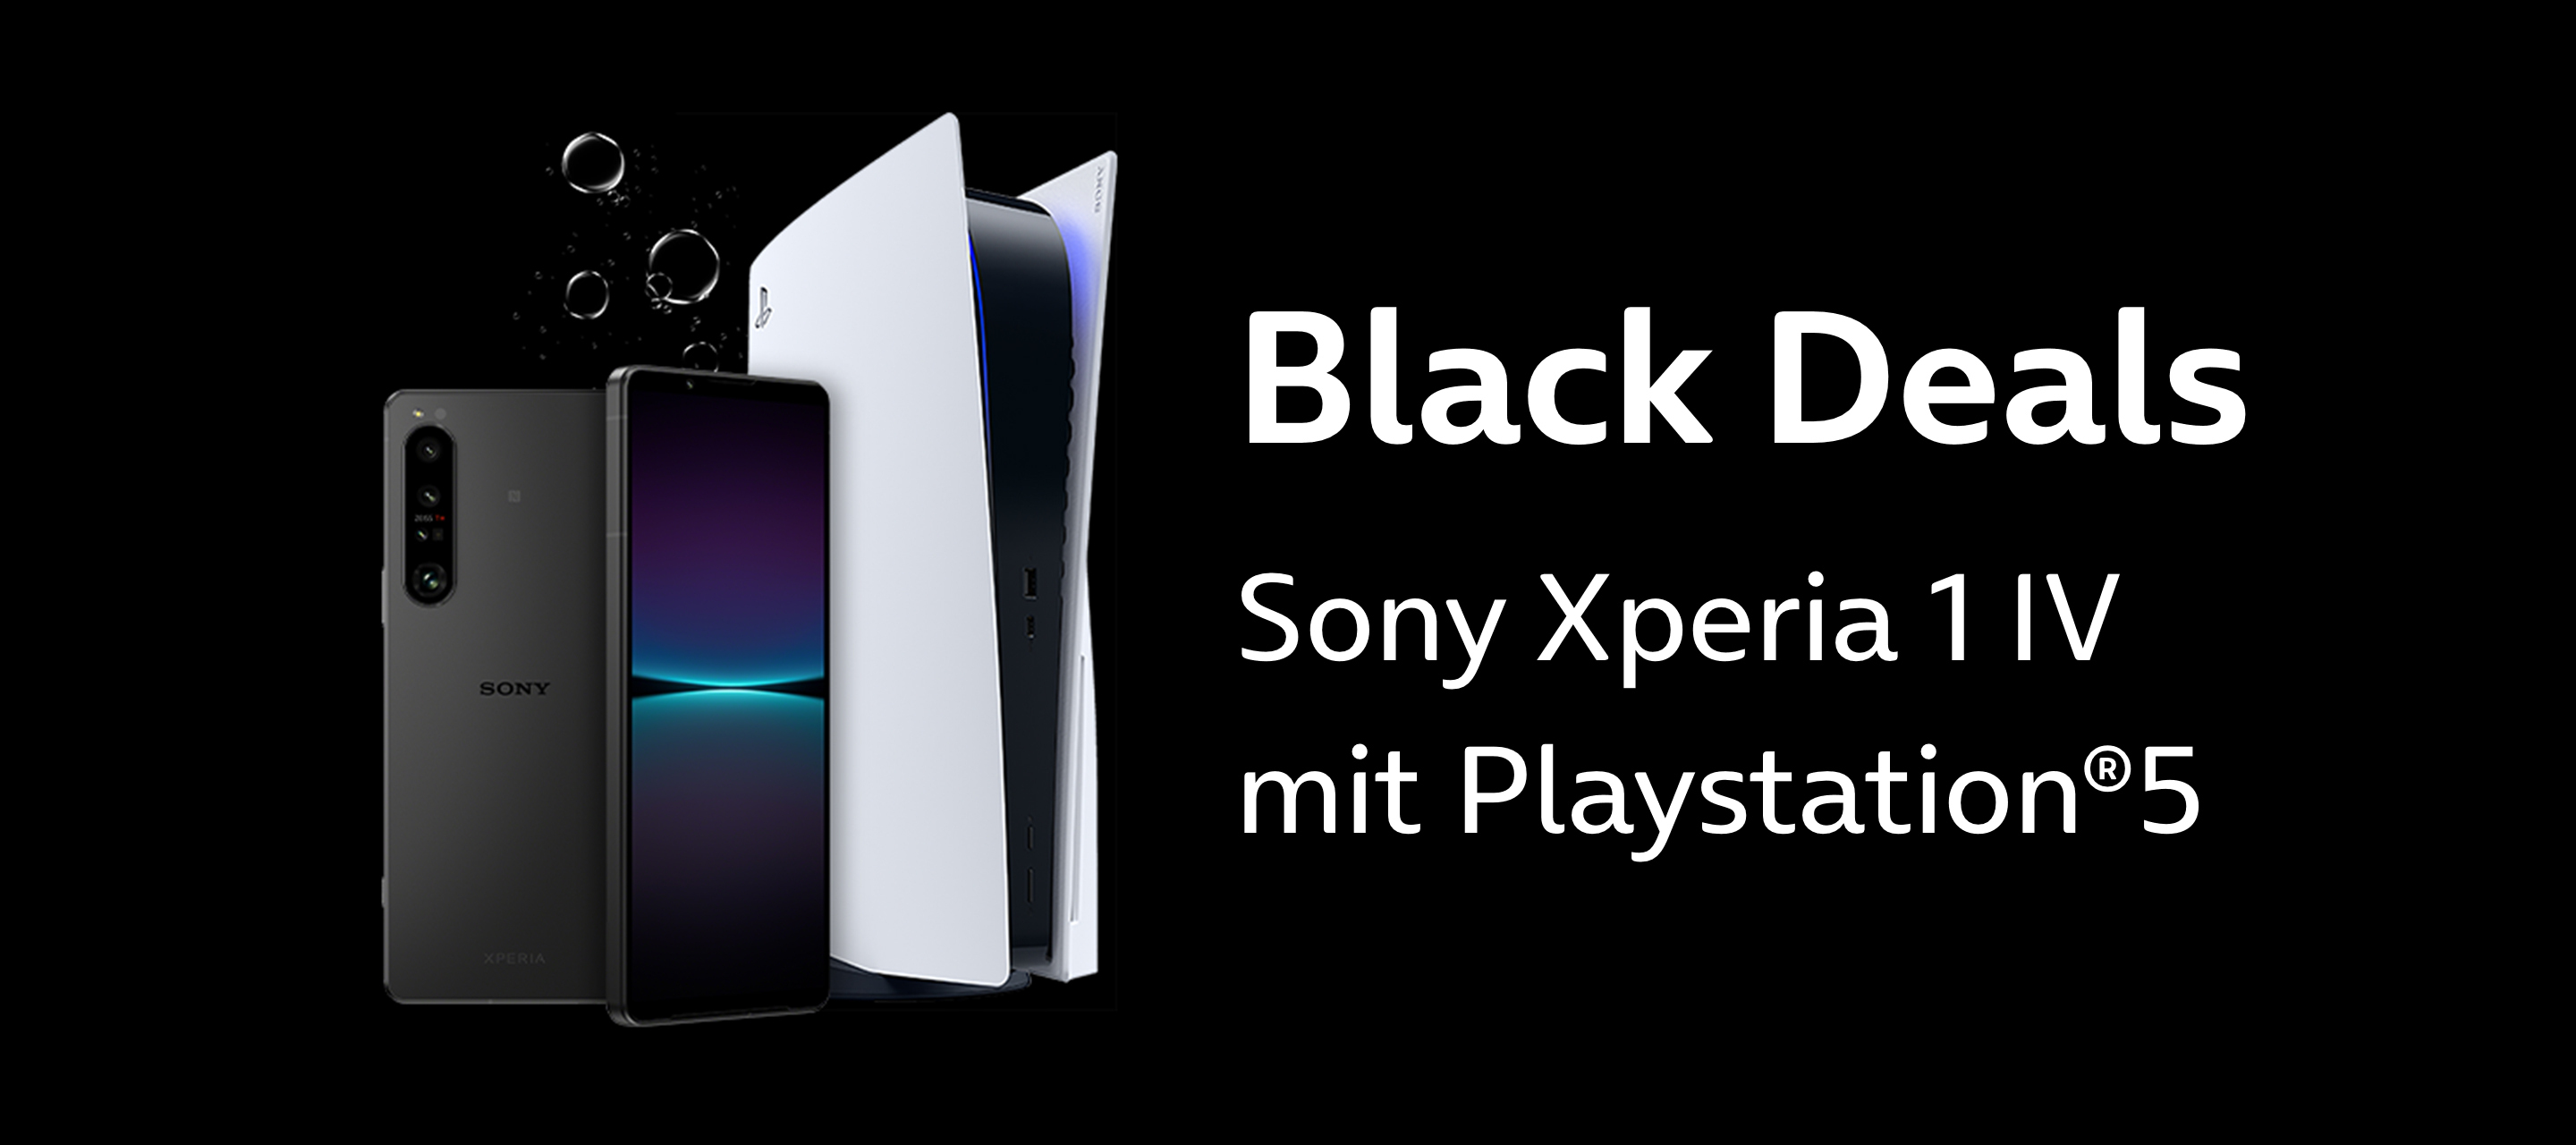 Jetzt in unseren Black Deals - Das Sony Xperia 1 IV mit PlayStation 5